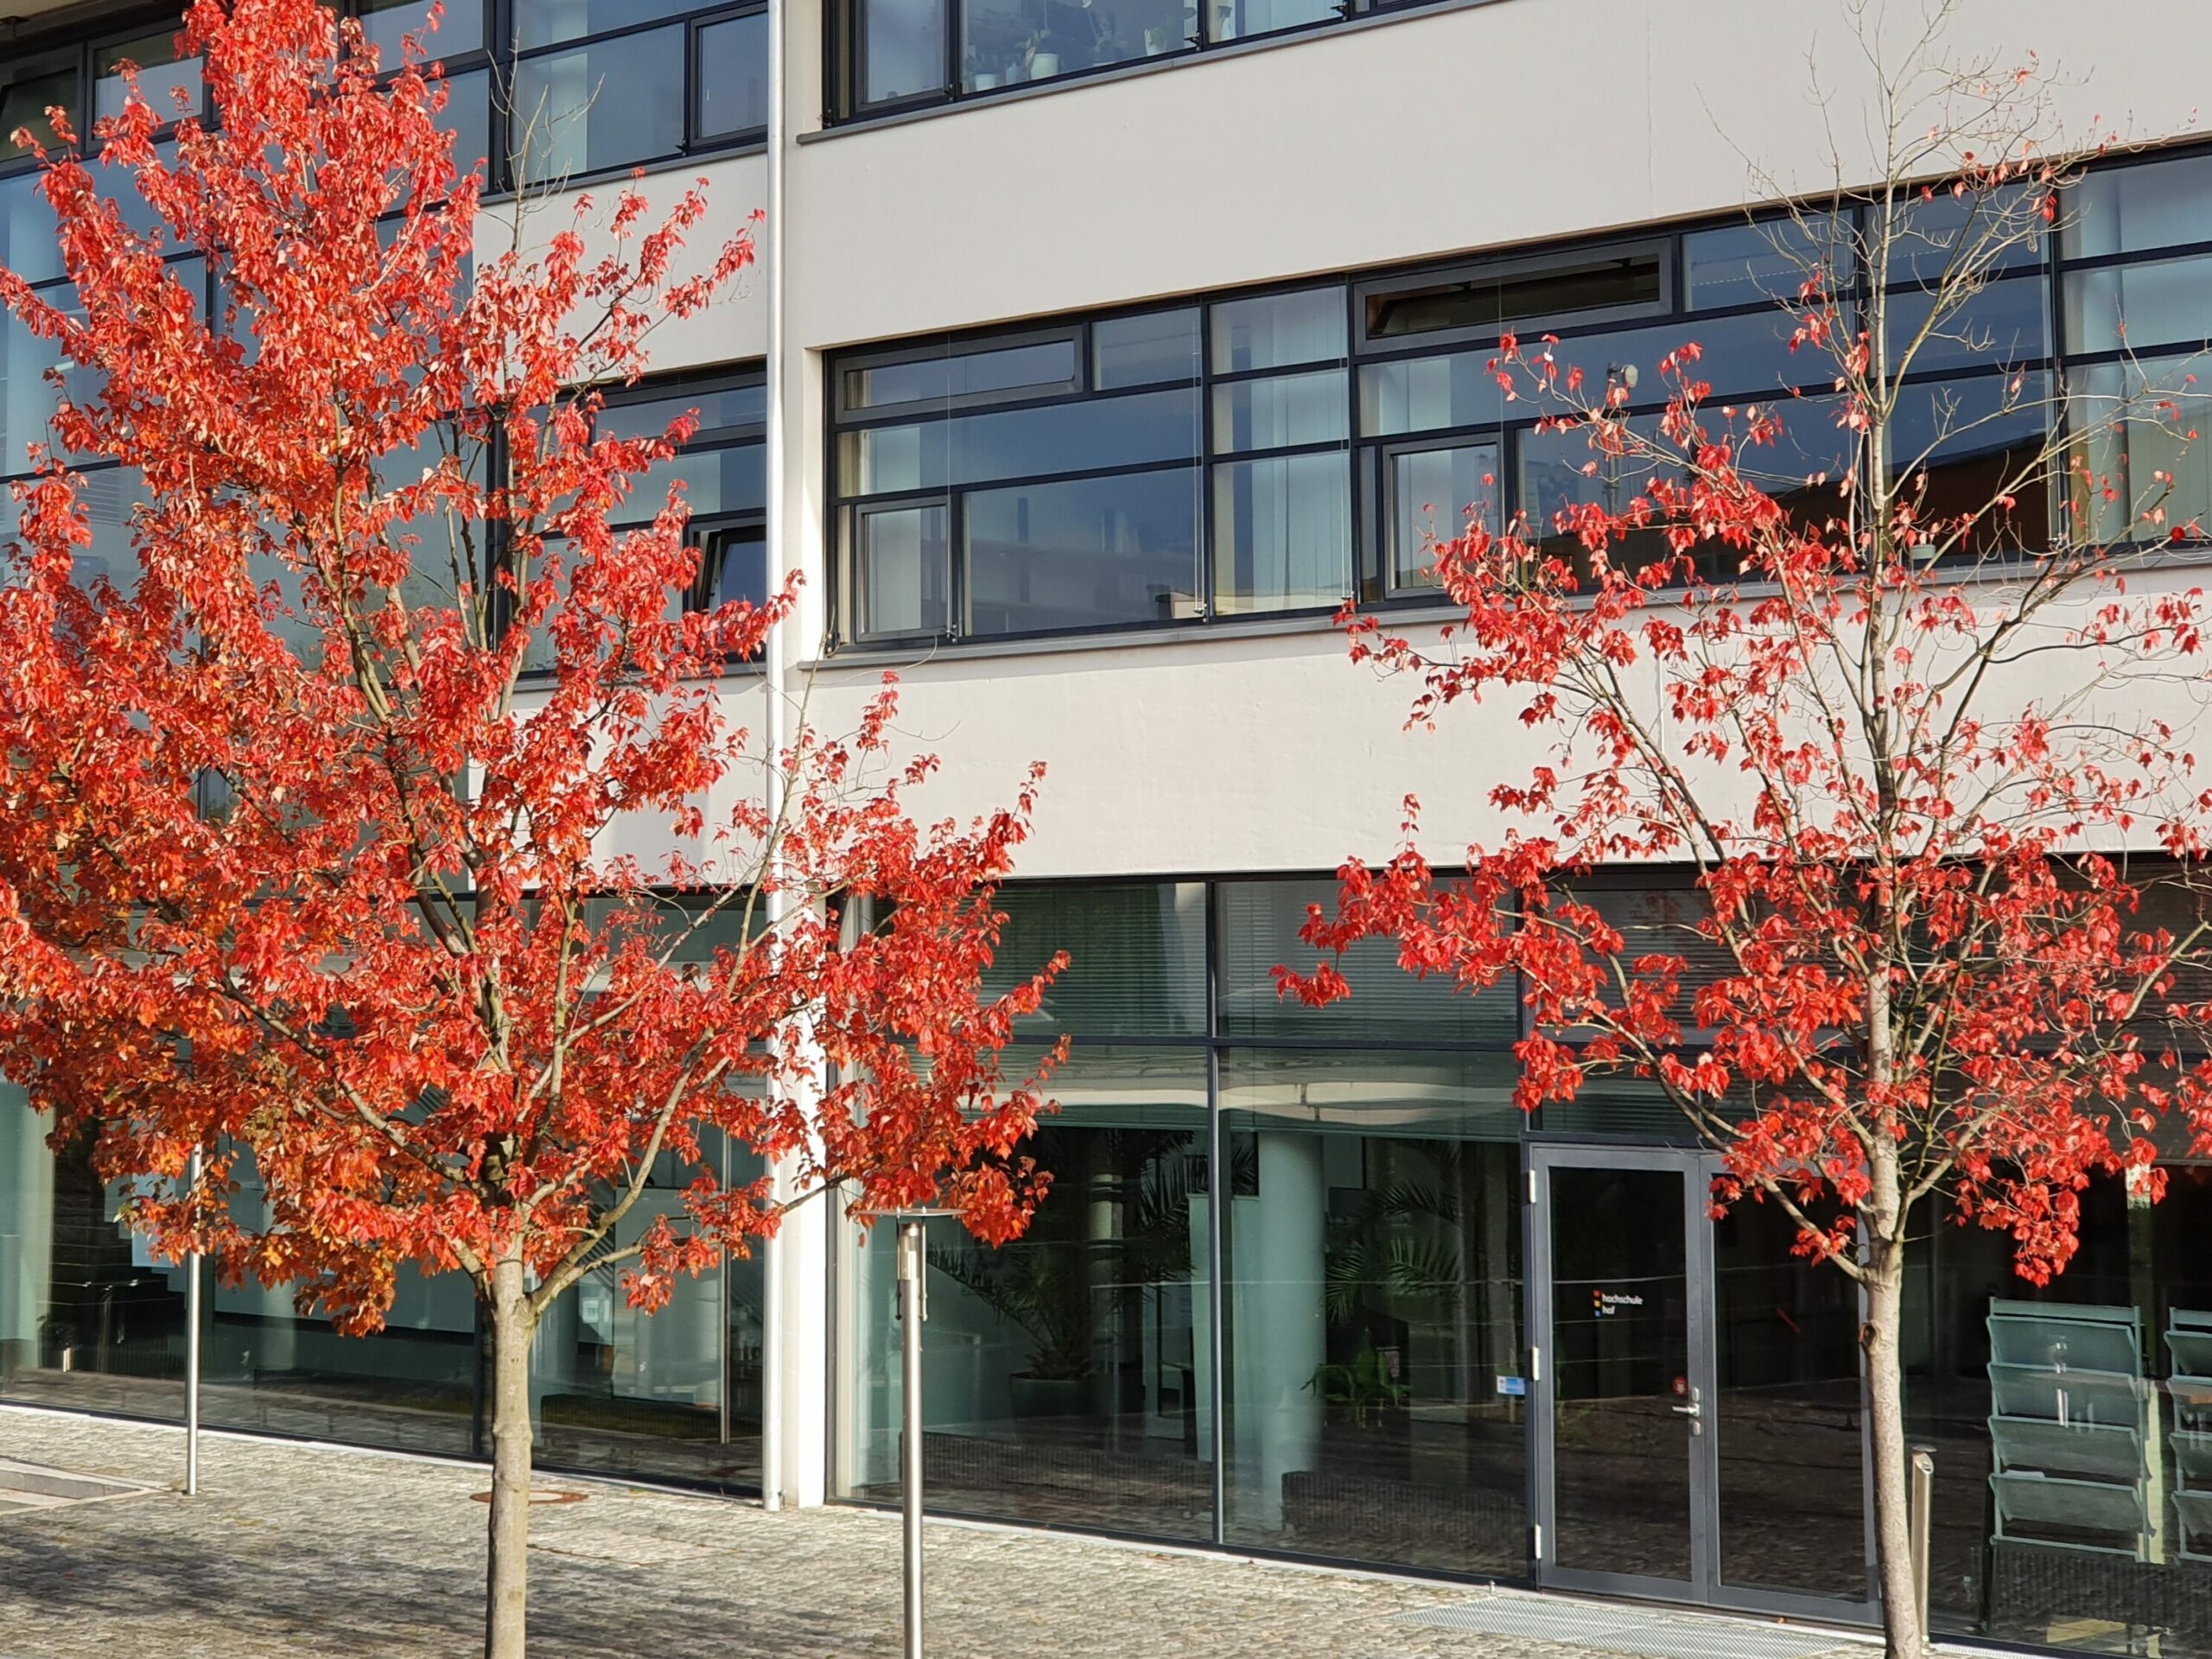 Hochschule Hof im Herbst mit bunten Laubbäumen